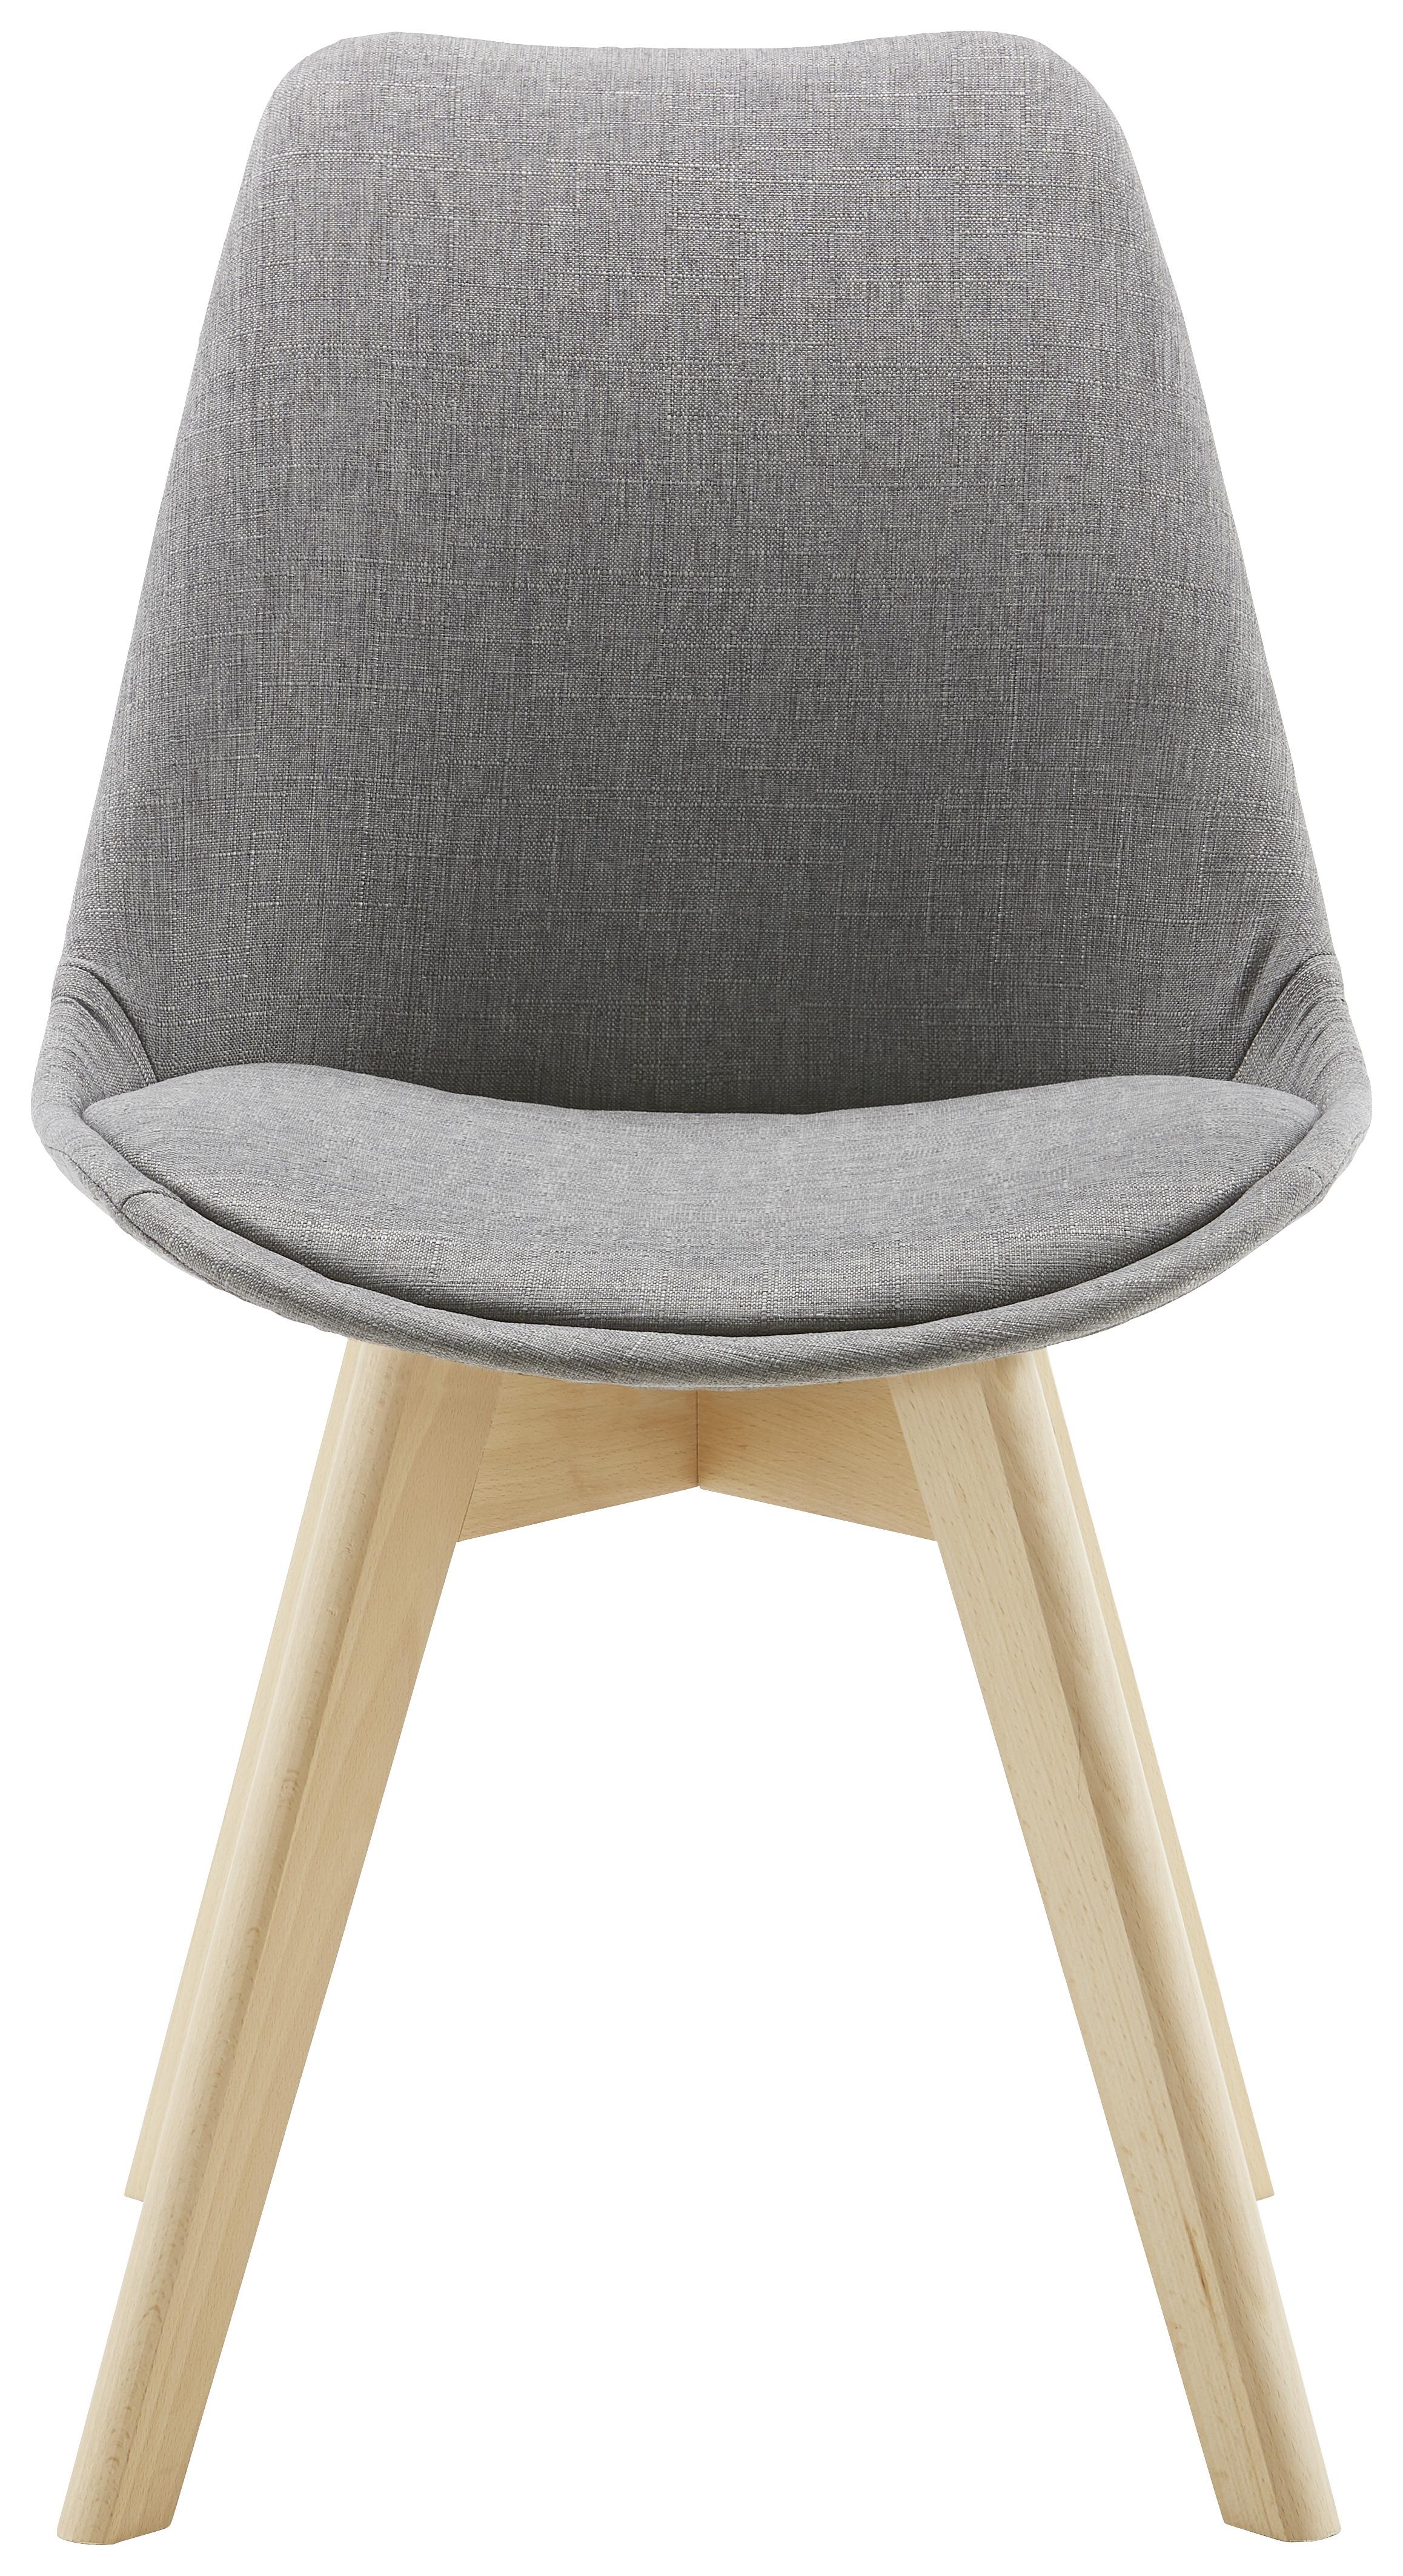 Jídelní Židle Rocksi - šedá/barvy buku, Moderní, dřevo/textil (48/82,5/43cm) - Bessagi Home